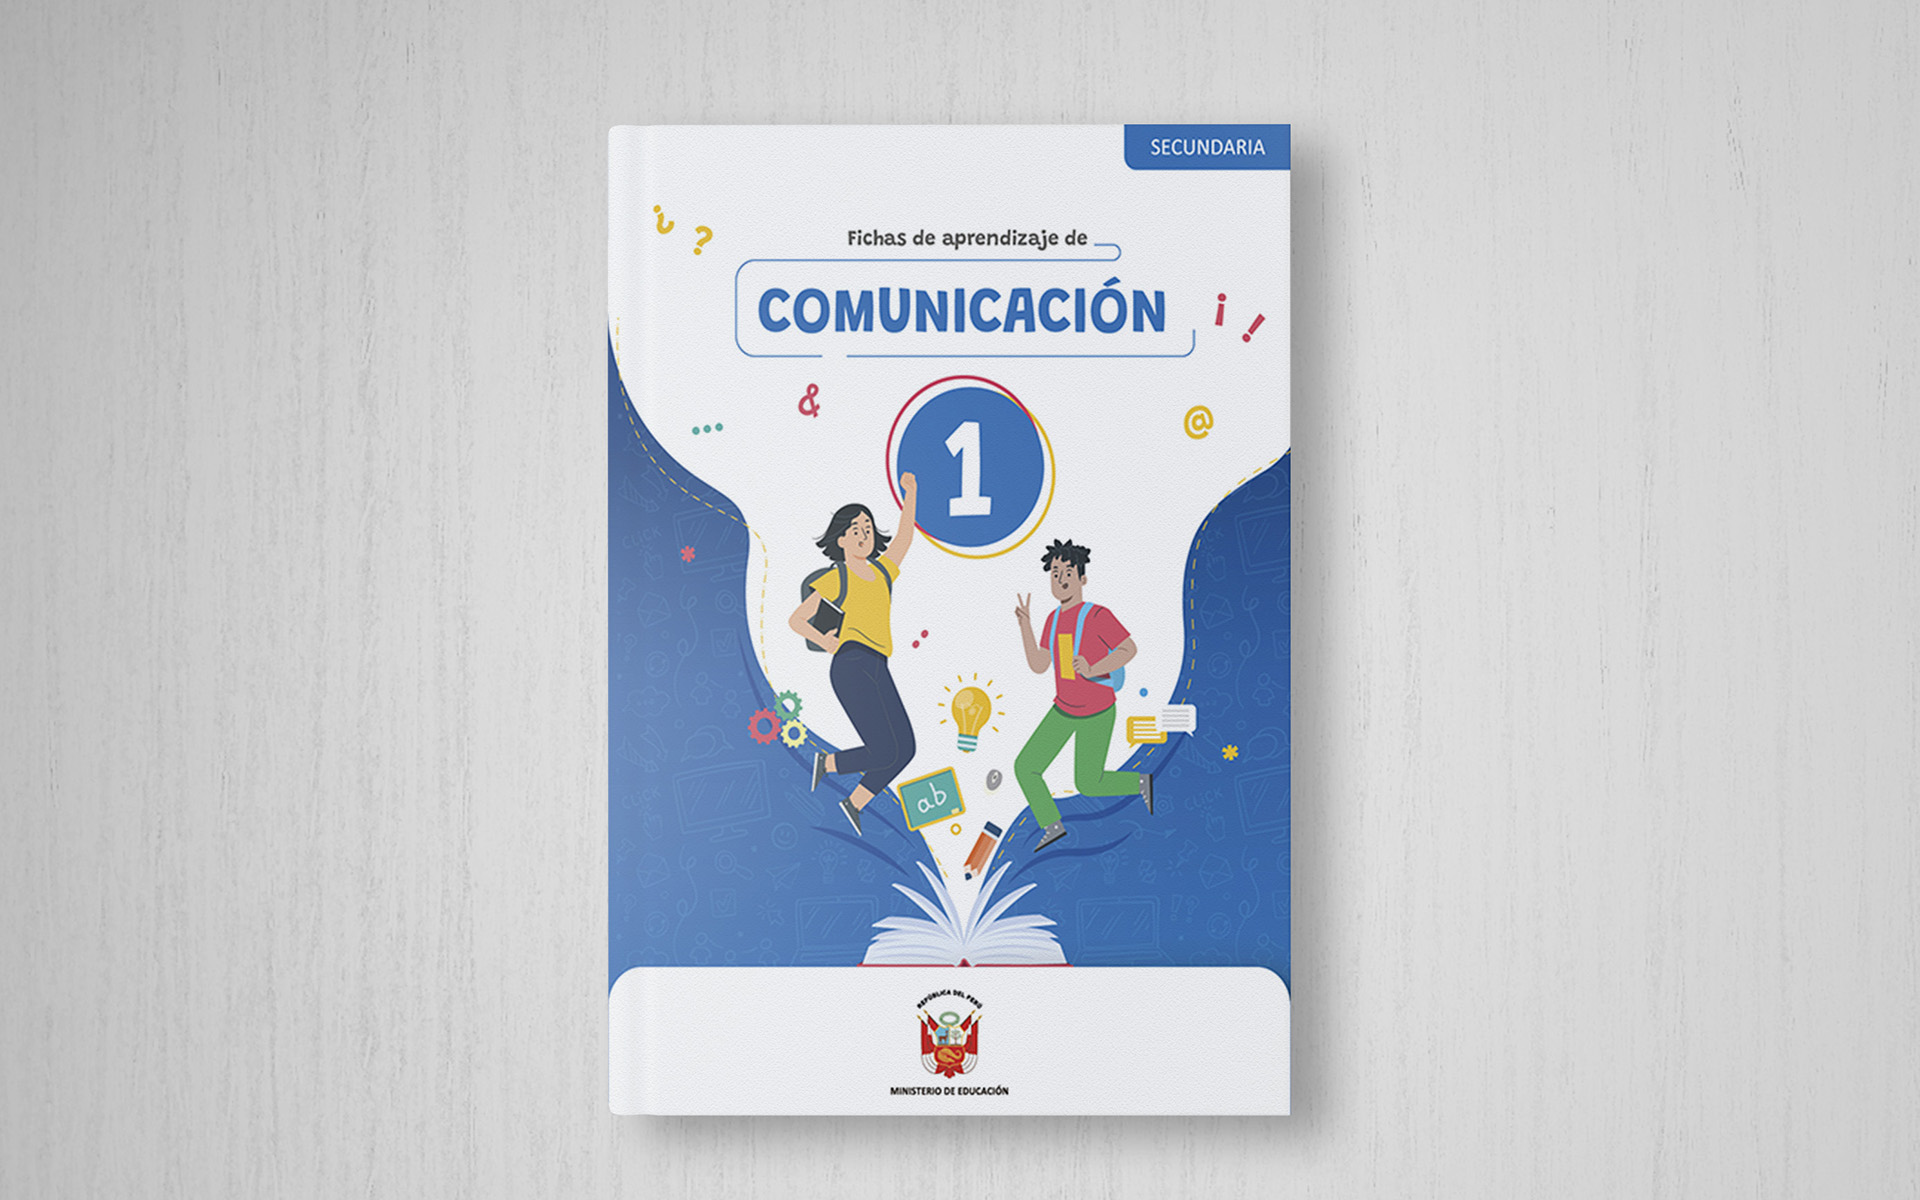 Fichas de aprendizaje de Comunicación